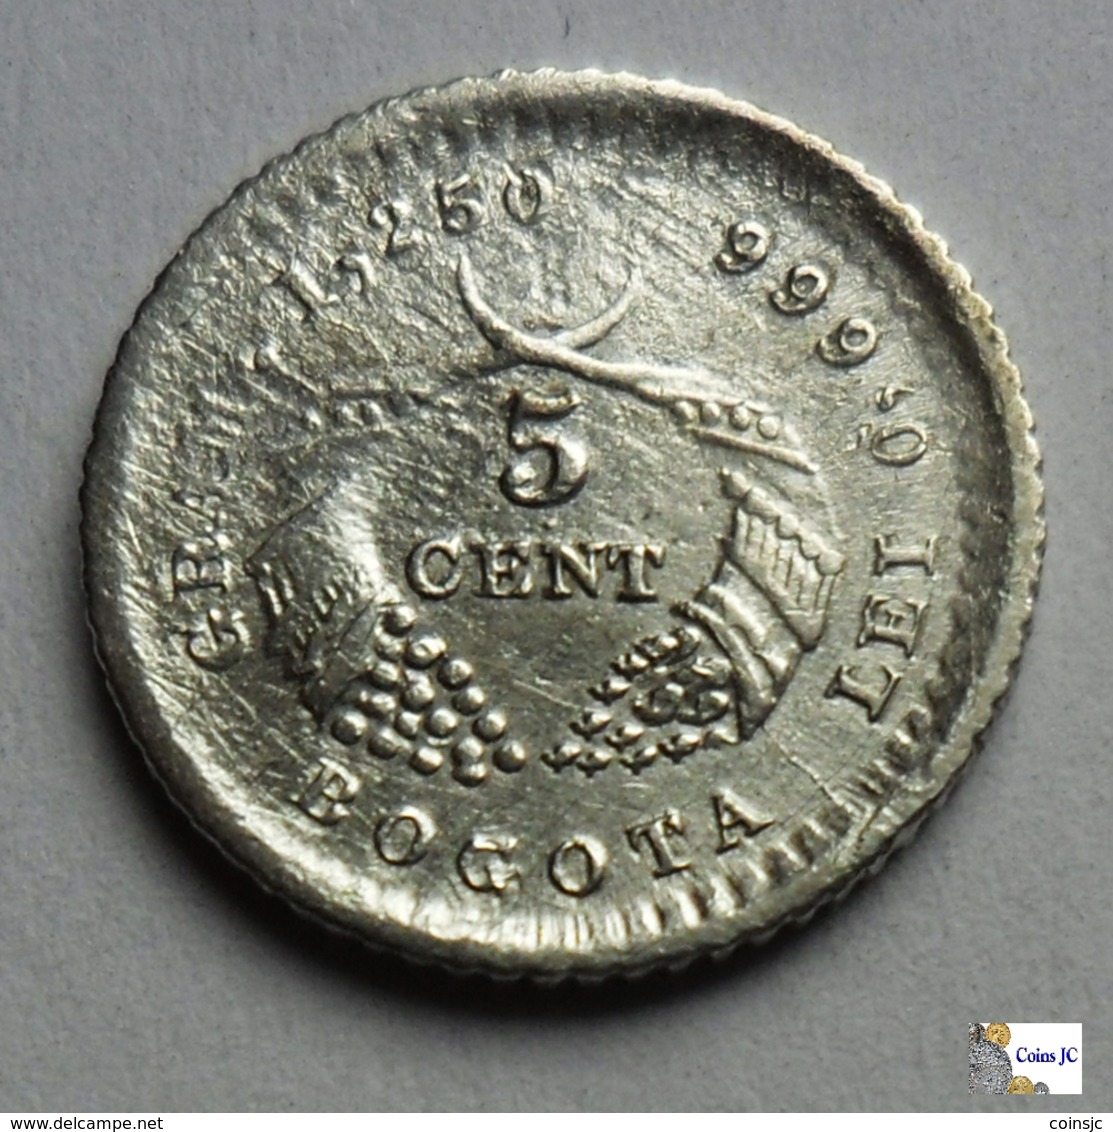 Colombia - Bogotá - 5 Centavos - 1883 - Colombia